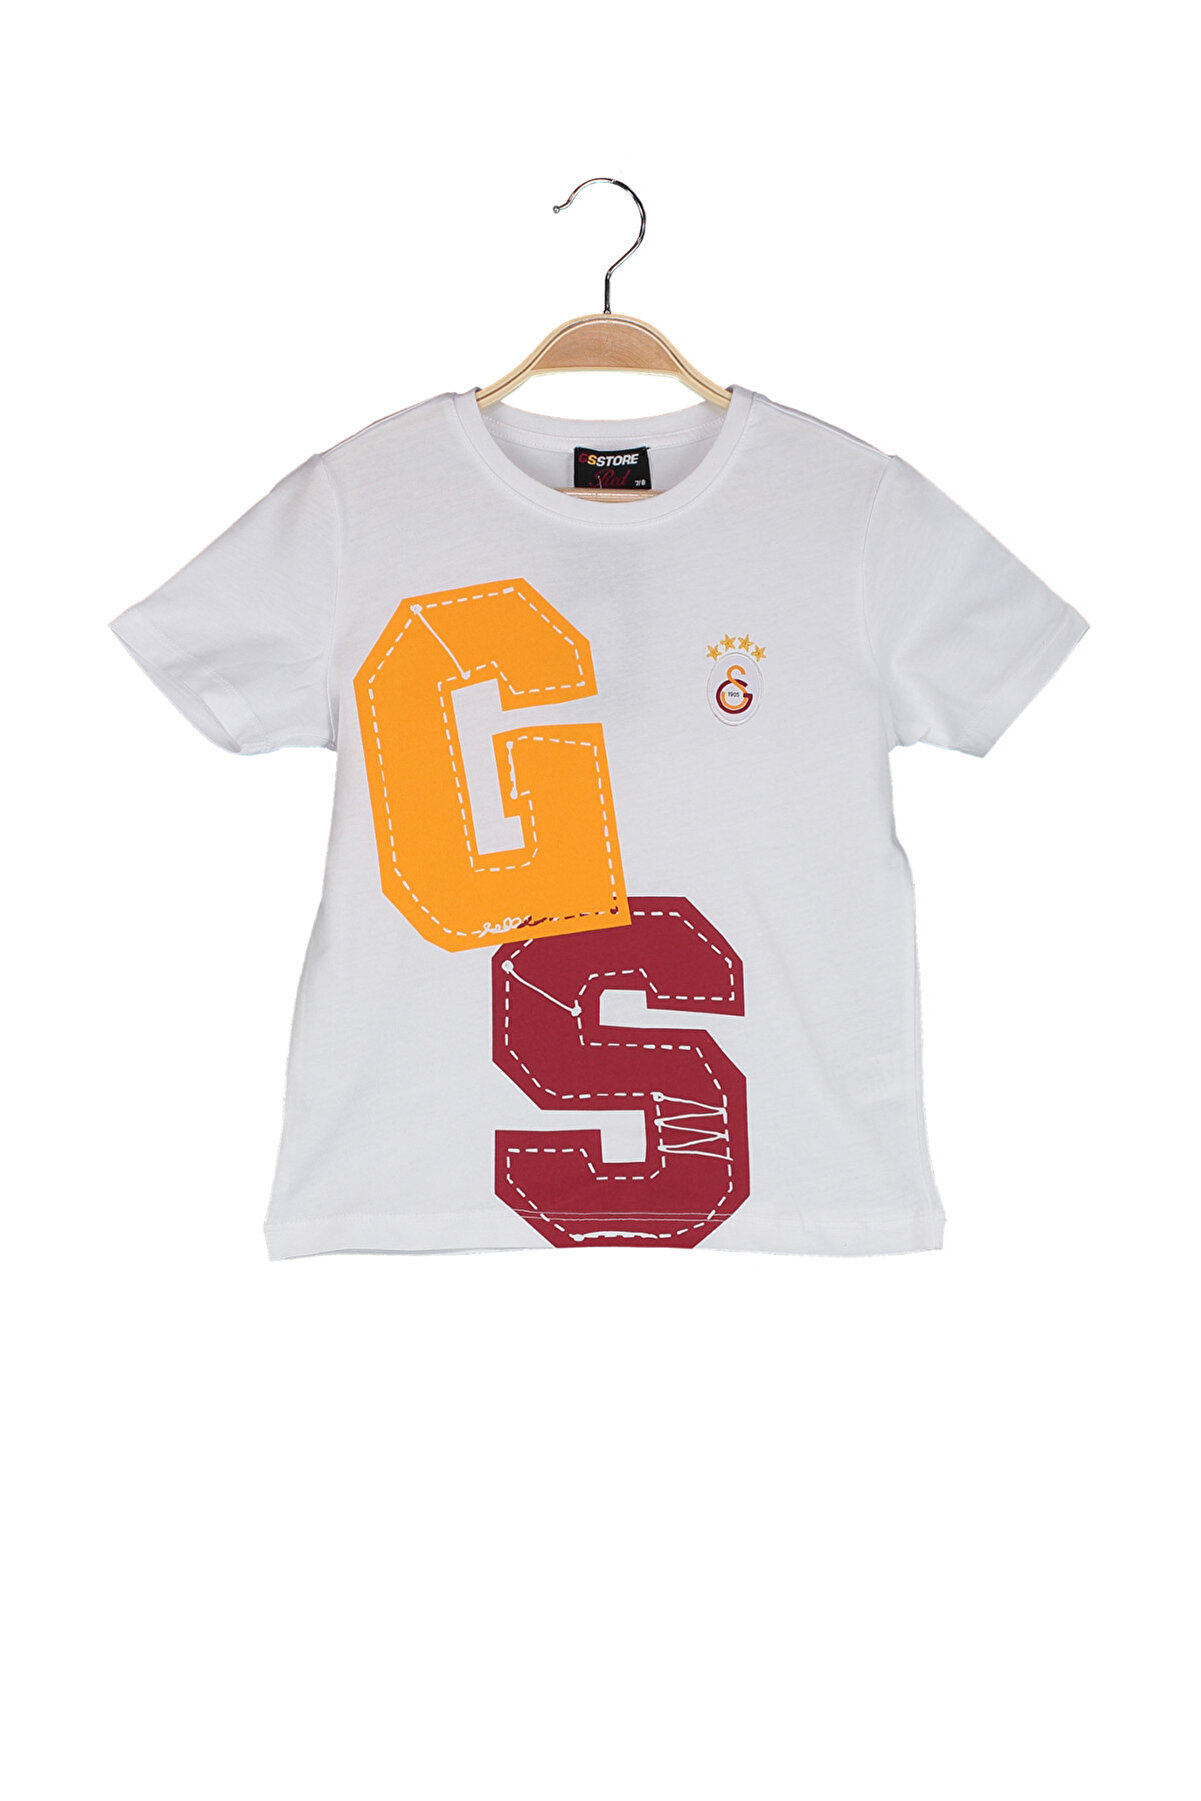 Galatasaray Galatasaray Beyaz Çocuk T-Shirt K023-C85690